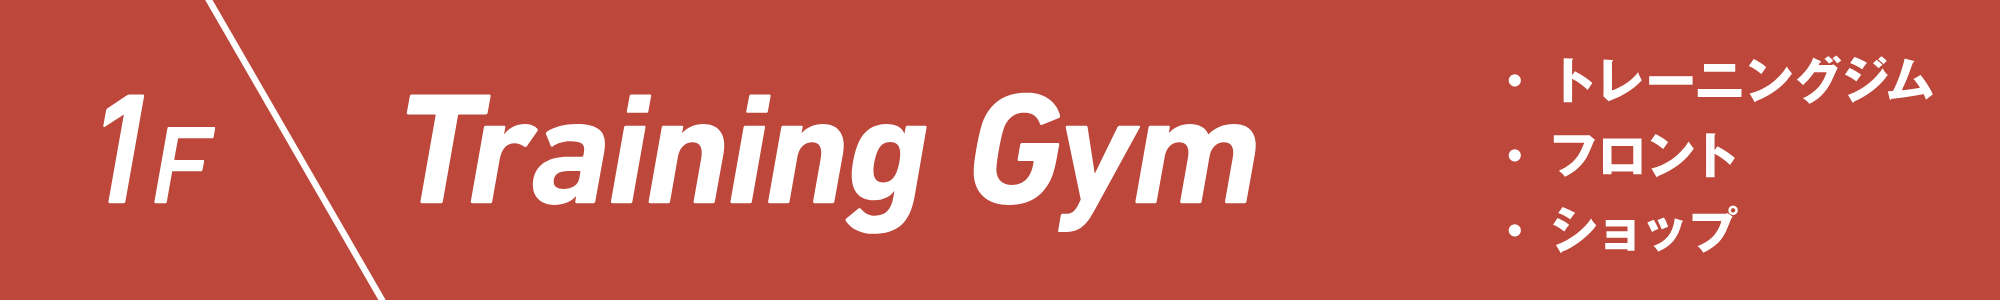 1F Training Gym